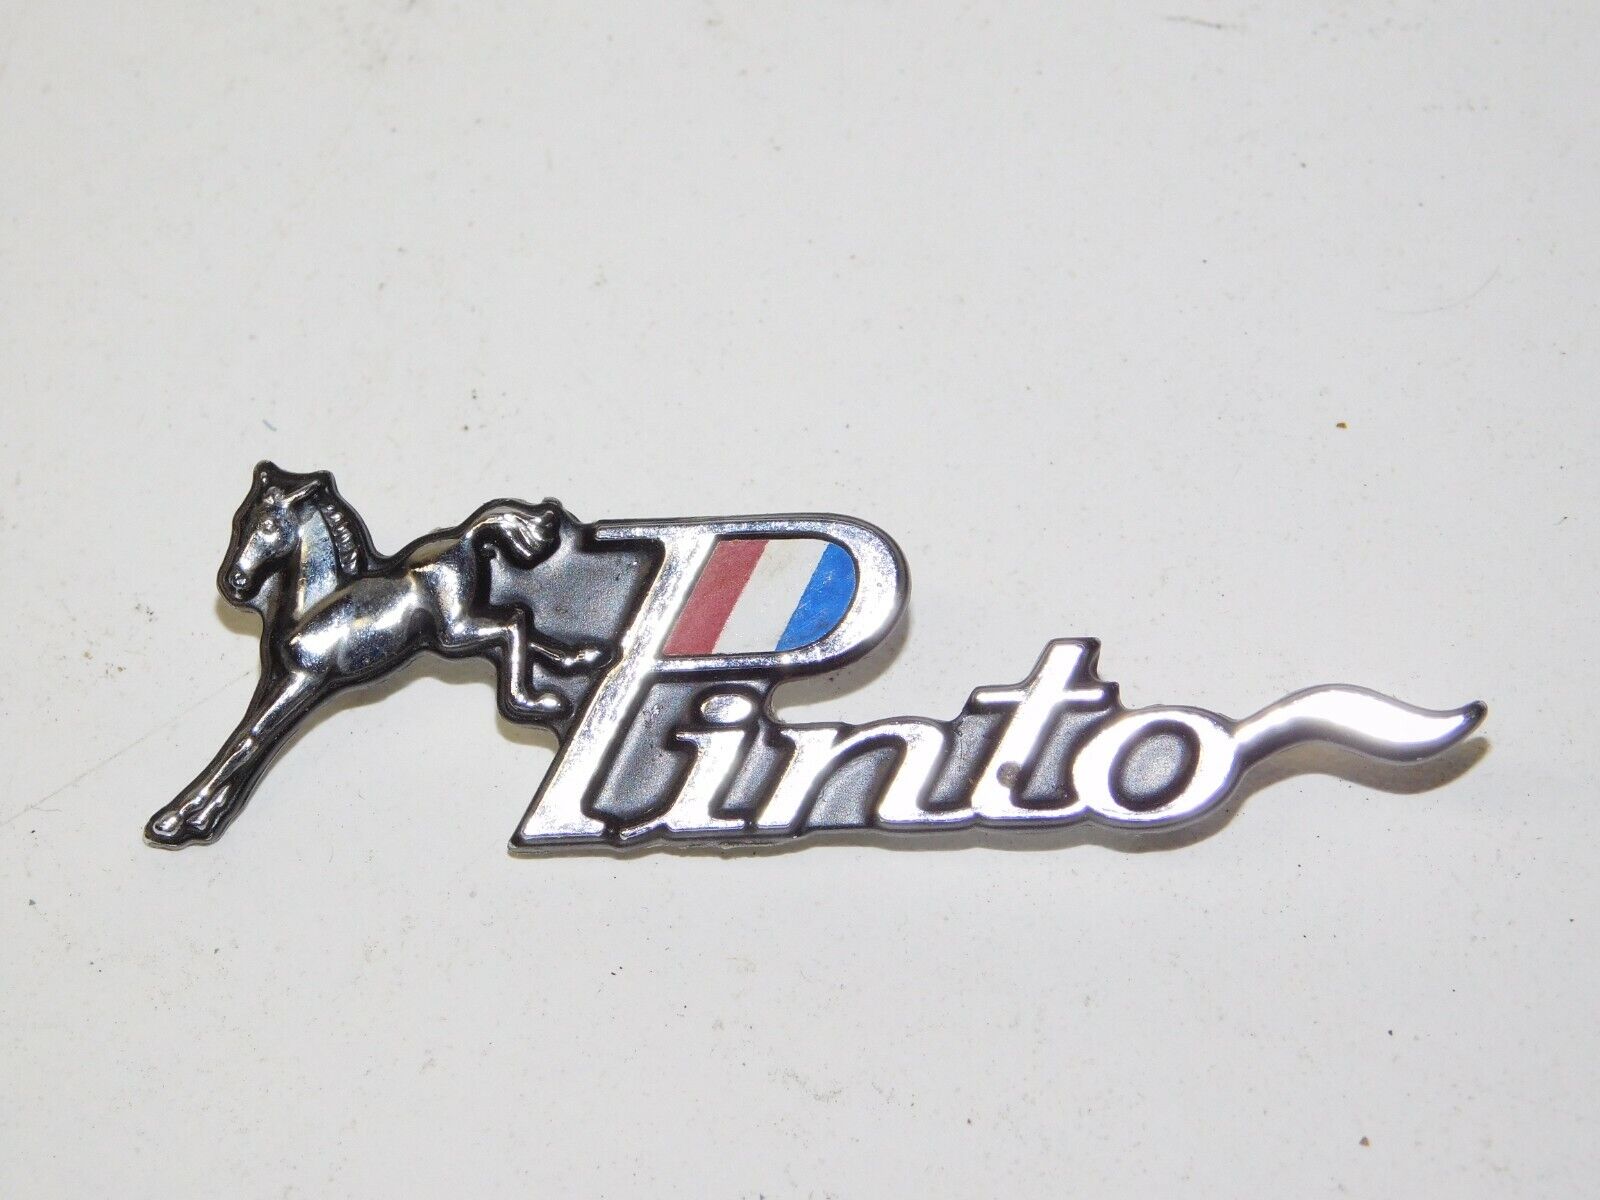 Vintage 1971 72 73 74 75 76 77 Ford Pinto Metal Horse Emblem Logo Badge OEM Part